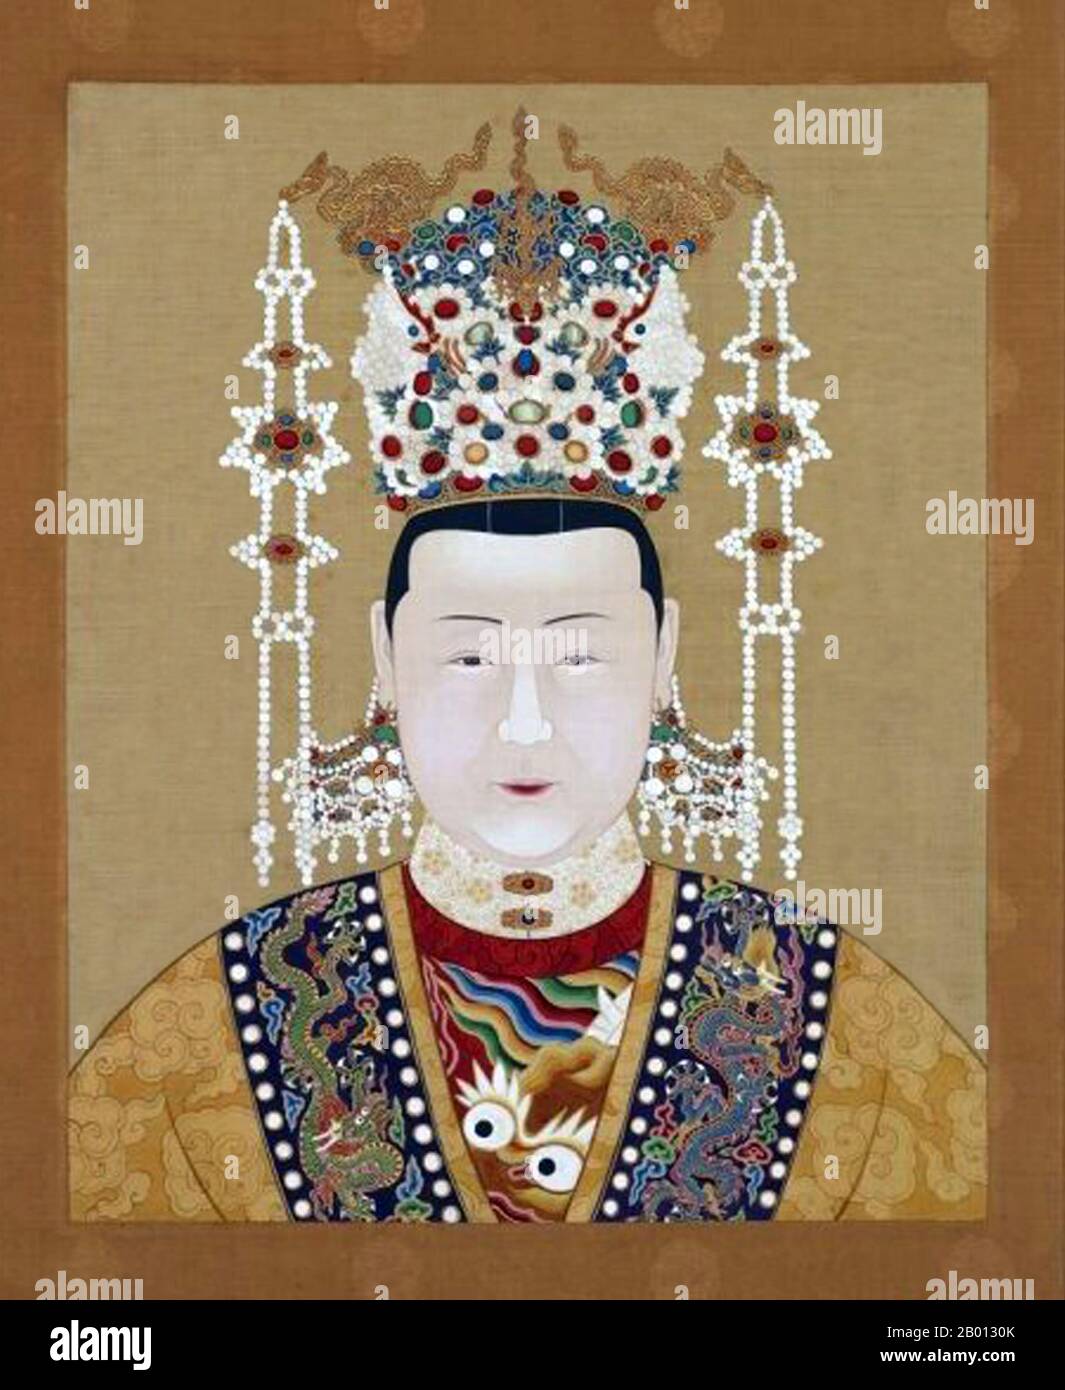 China: Kaiserin Xiao Jing Yi (1492-1535), Gemahlin des 11. Ming-Imperators Zhengde (r. 1505-1521). Hängende Schriftrolle, 16.-17. Jahrhundert. Kaiserin Xia, formell Kaiserin Xiaojingyi, war die Gemahlin des Zhengde-Imperators (r. 1505-1521) der Ming-Dynastie. Sie heiratete den Kaiser im Jahr 1506 und war bekannt für seine Eleganz und Tugendhaft. Sie brachte jedoch kein Kind mit, und als der Kaiser Zhengde 1521 kinderlos starb, folgte ihm sein Cousin, der Kaiser Jiangjing. Sie erhielt den Titel Kaiserin Chuang-su, da sie keine Kaiserin Dowager sein konnte. Stockfoto